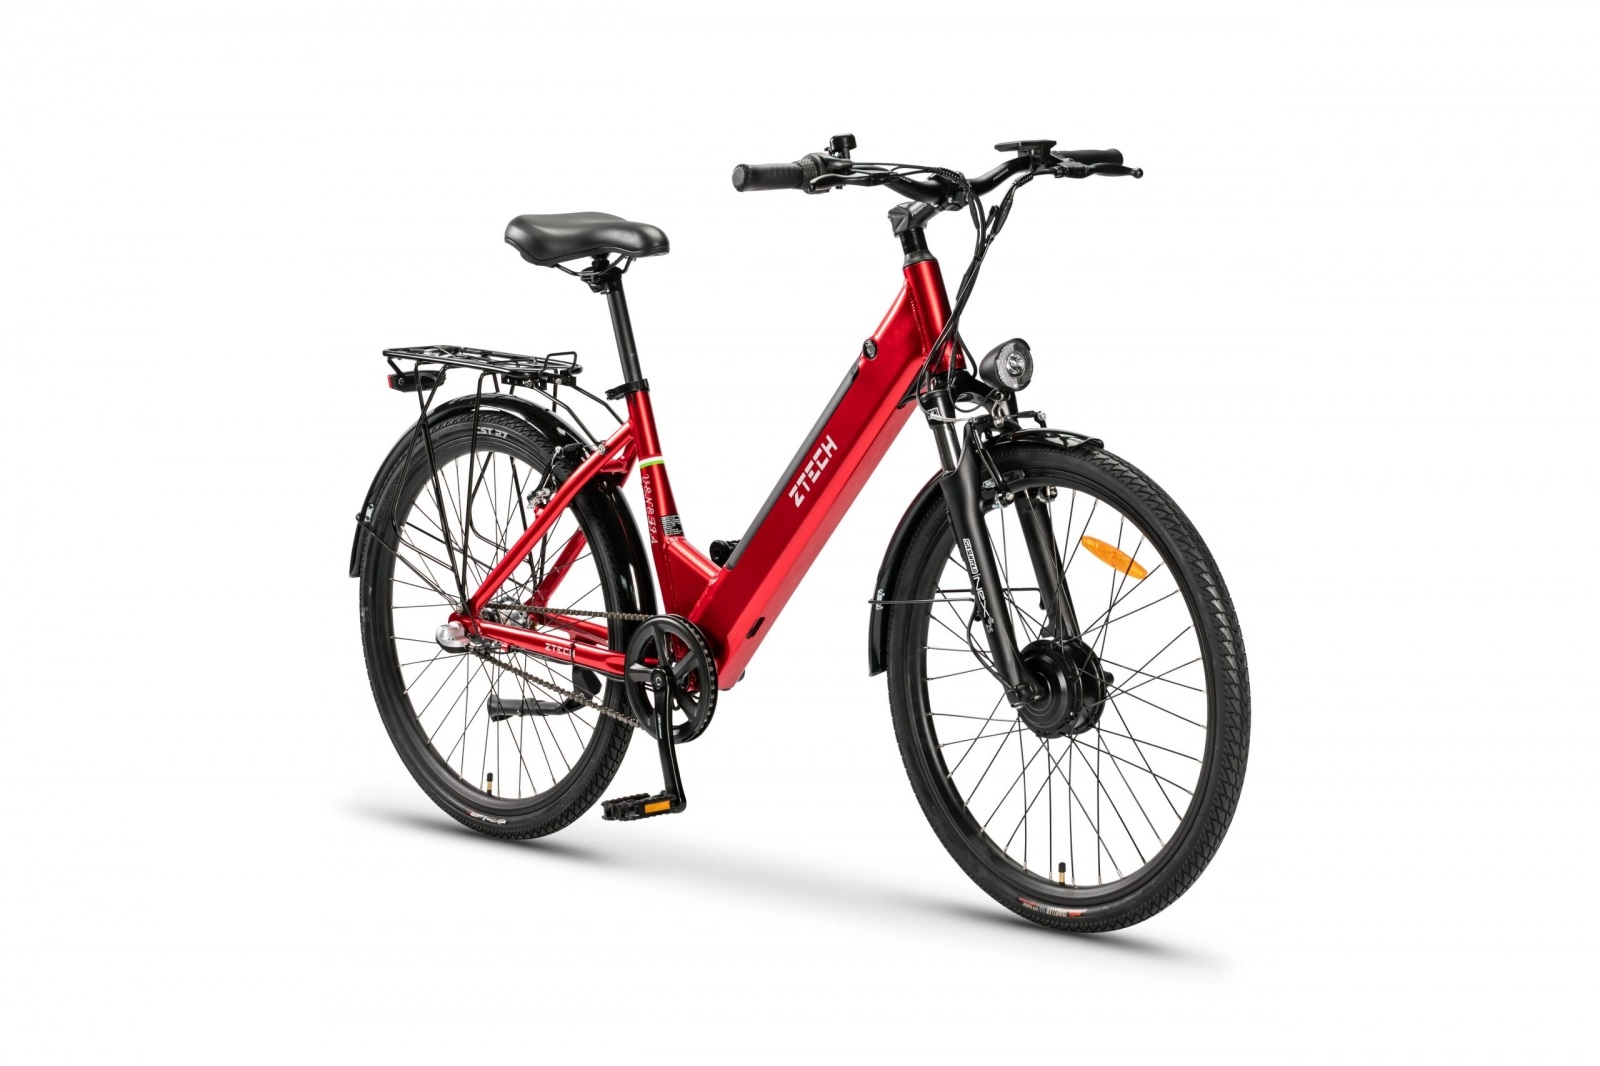 Bicicleta electrica e-bike Z-tech, zt-83 ,li-ion, roata 26, 250w, 36v, 12 ah, shimano nexus 3s , culoare rosu